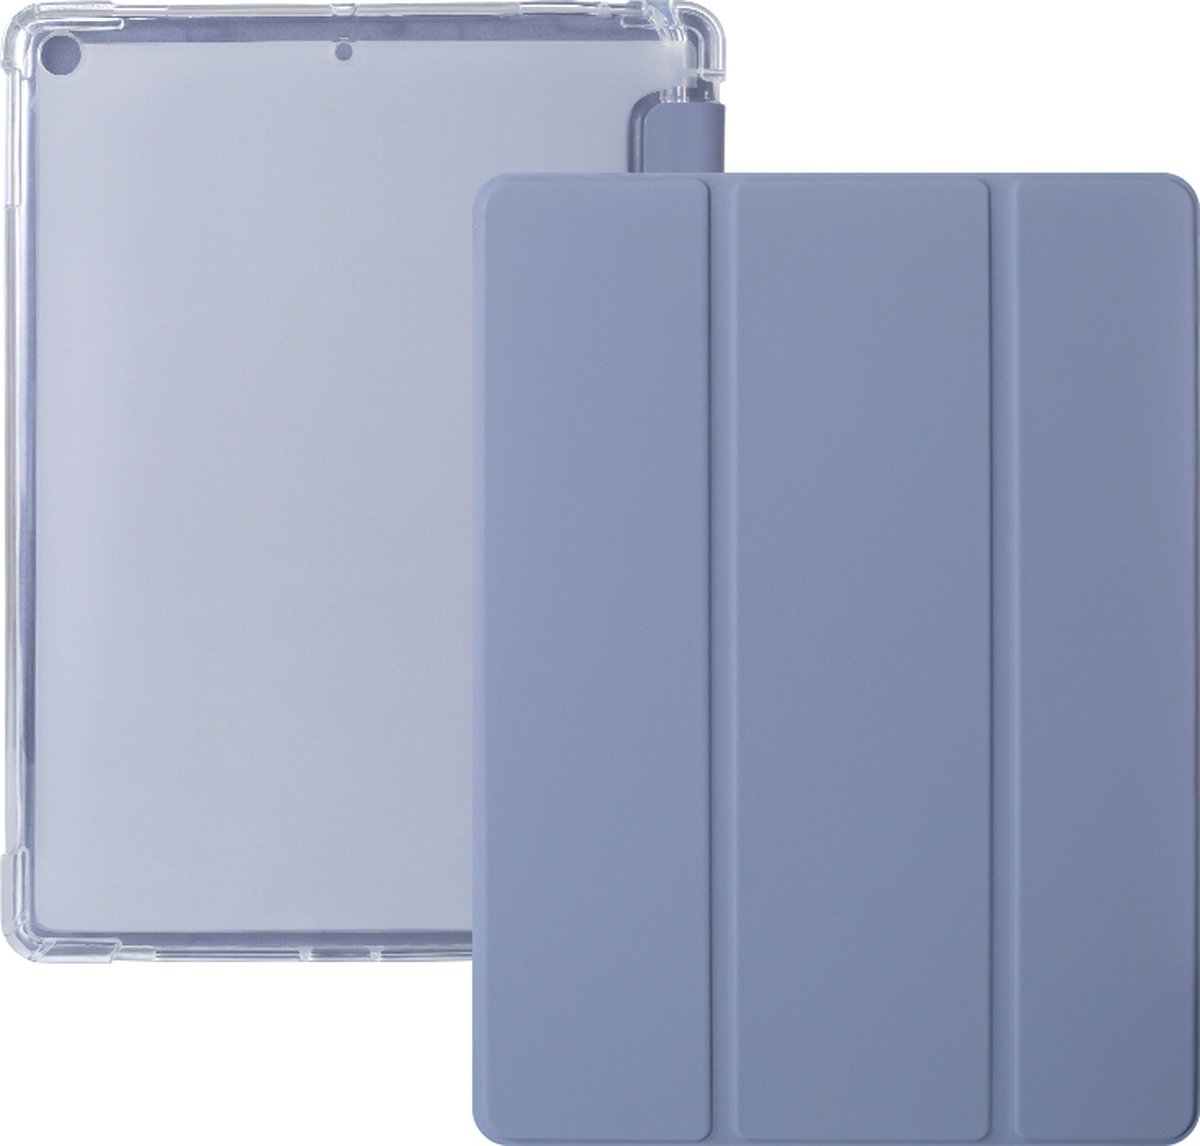 iPad Hoes 2017 / 2018 / Air / Air 2 - Clear Back Folio Cover met Apple Pencil Opbergvak - Magnetische iPad Case - Paars - Schokbestendige iPad Hoesje - Geschikt voor Apple iPad 9.7 inch - 5e / 6e en iPad Air 1e / 2e generatie